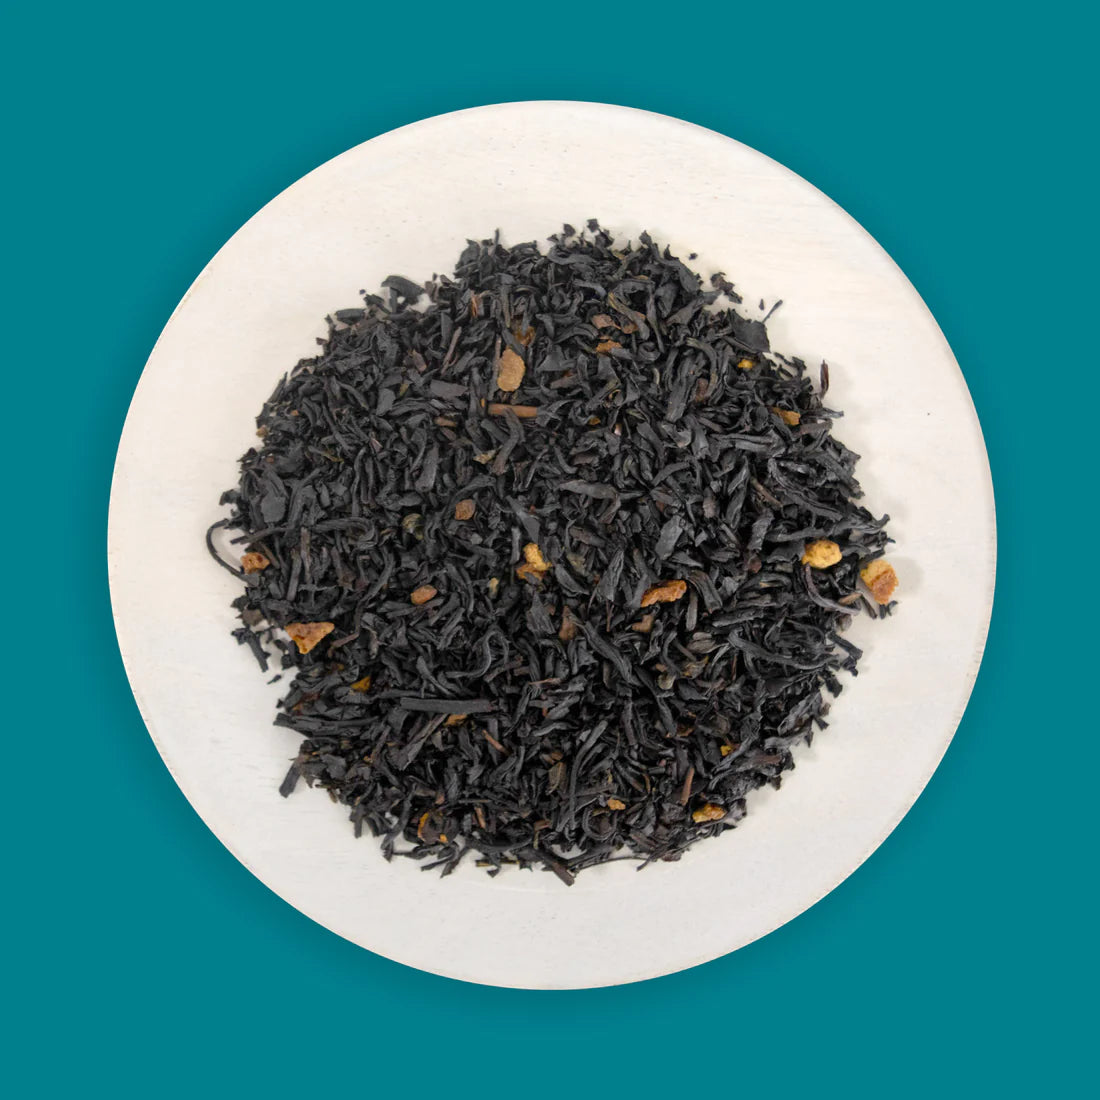 Savoy Tea Co.- Cinnamon Orange Black Tea- Box of 15 Sachets